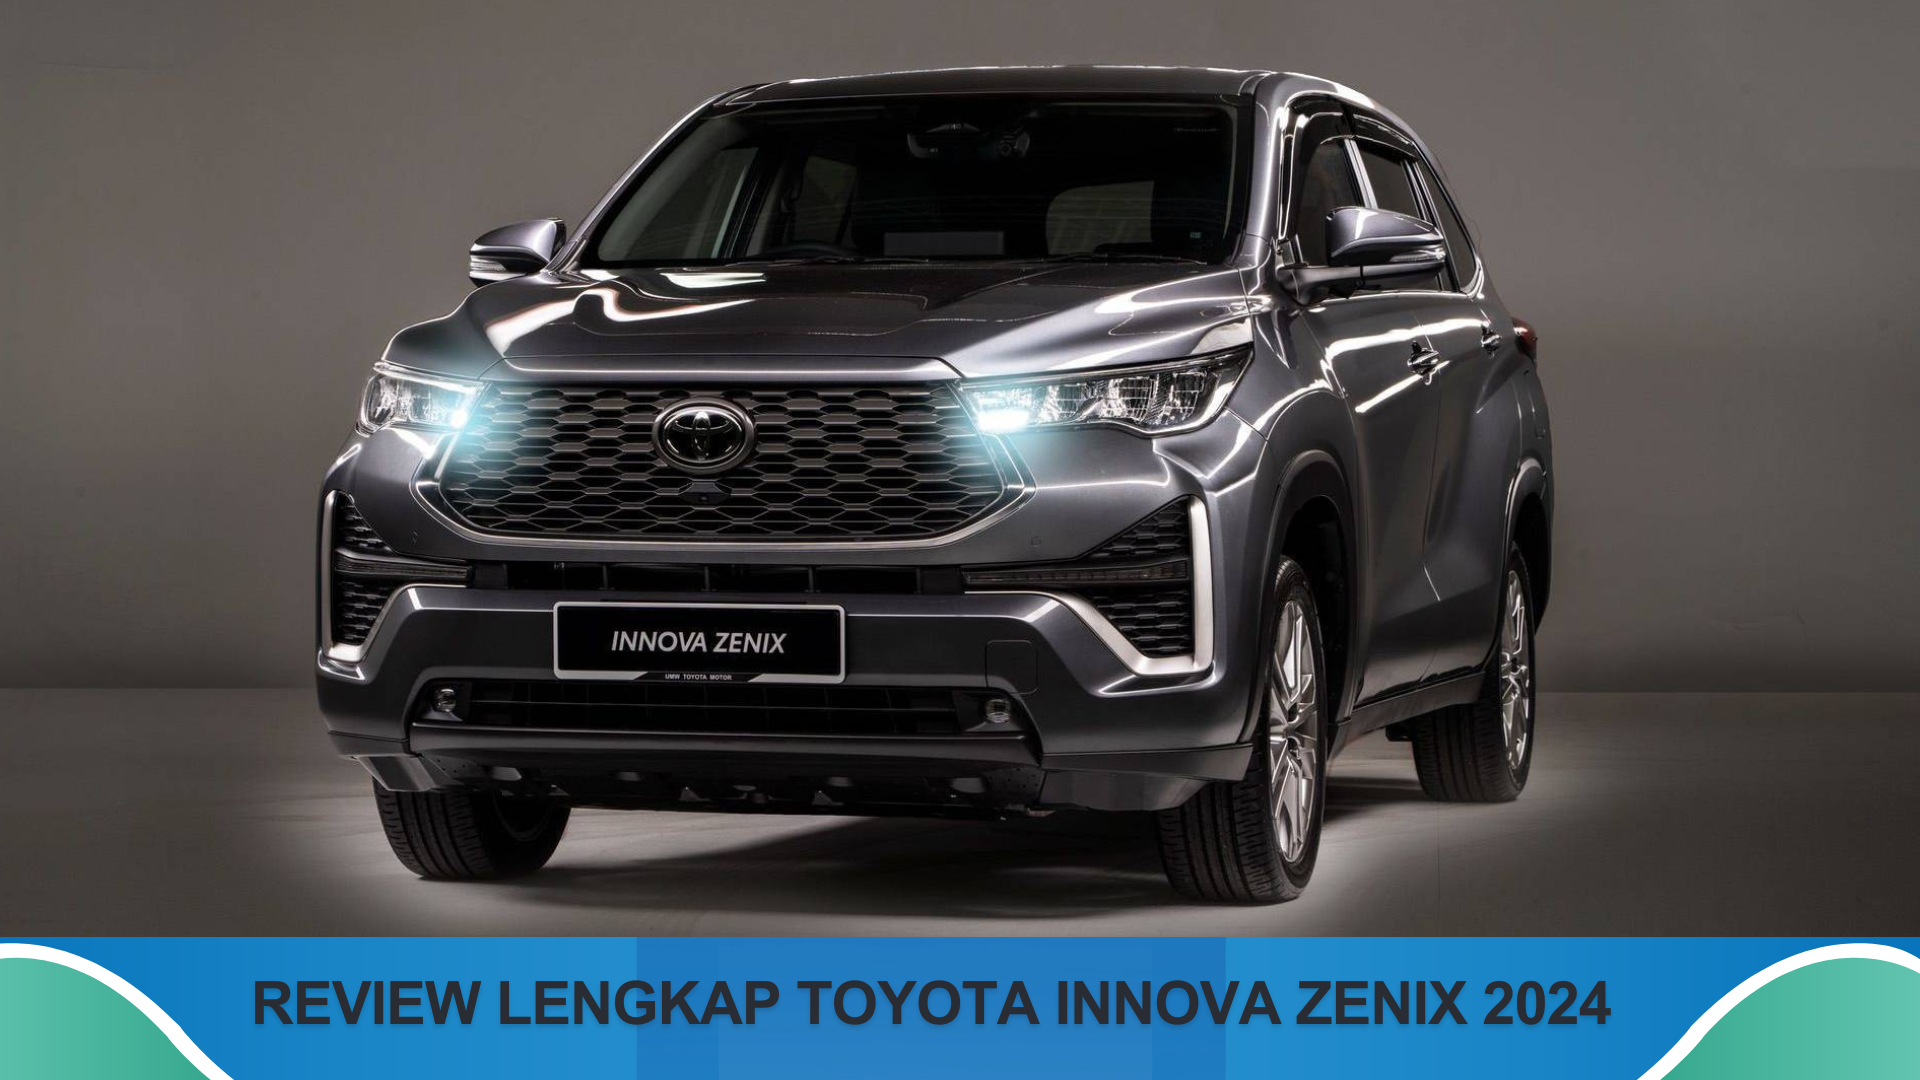 Begini Review Lengkap Toyota Innova Zenix 2024, MPV Premium dengan Tampilan Gagah dan Menawan Pilihan Keluarga